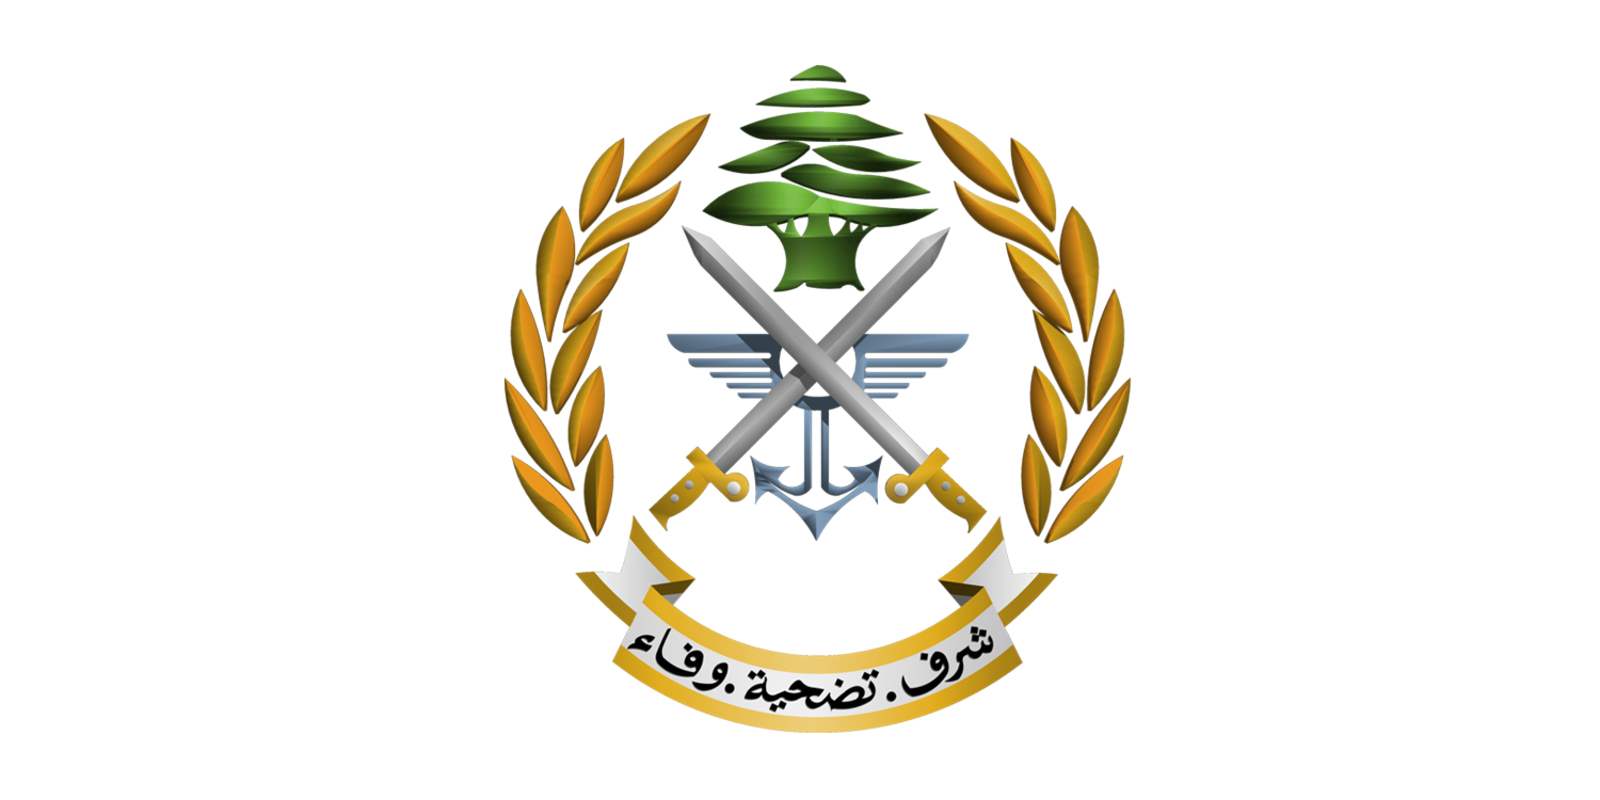 الجيش: تحرير عراقي بعد خطفه في بيروت وتوقيف 3 من المتورطين في عملية الخطف